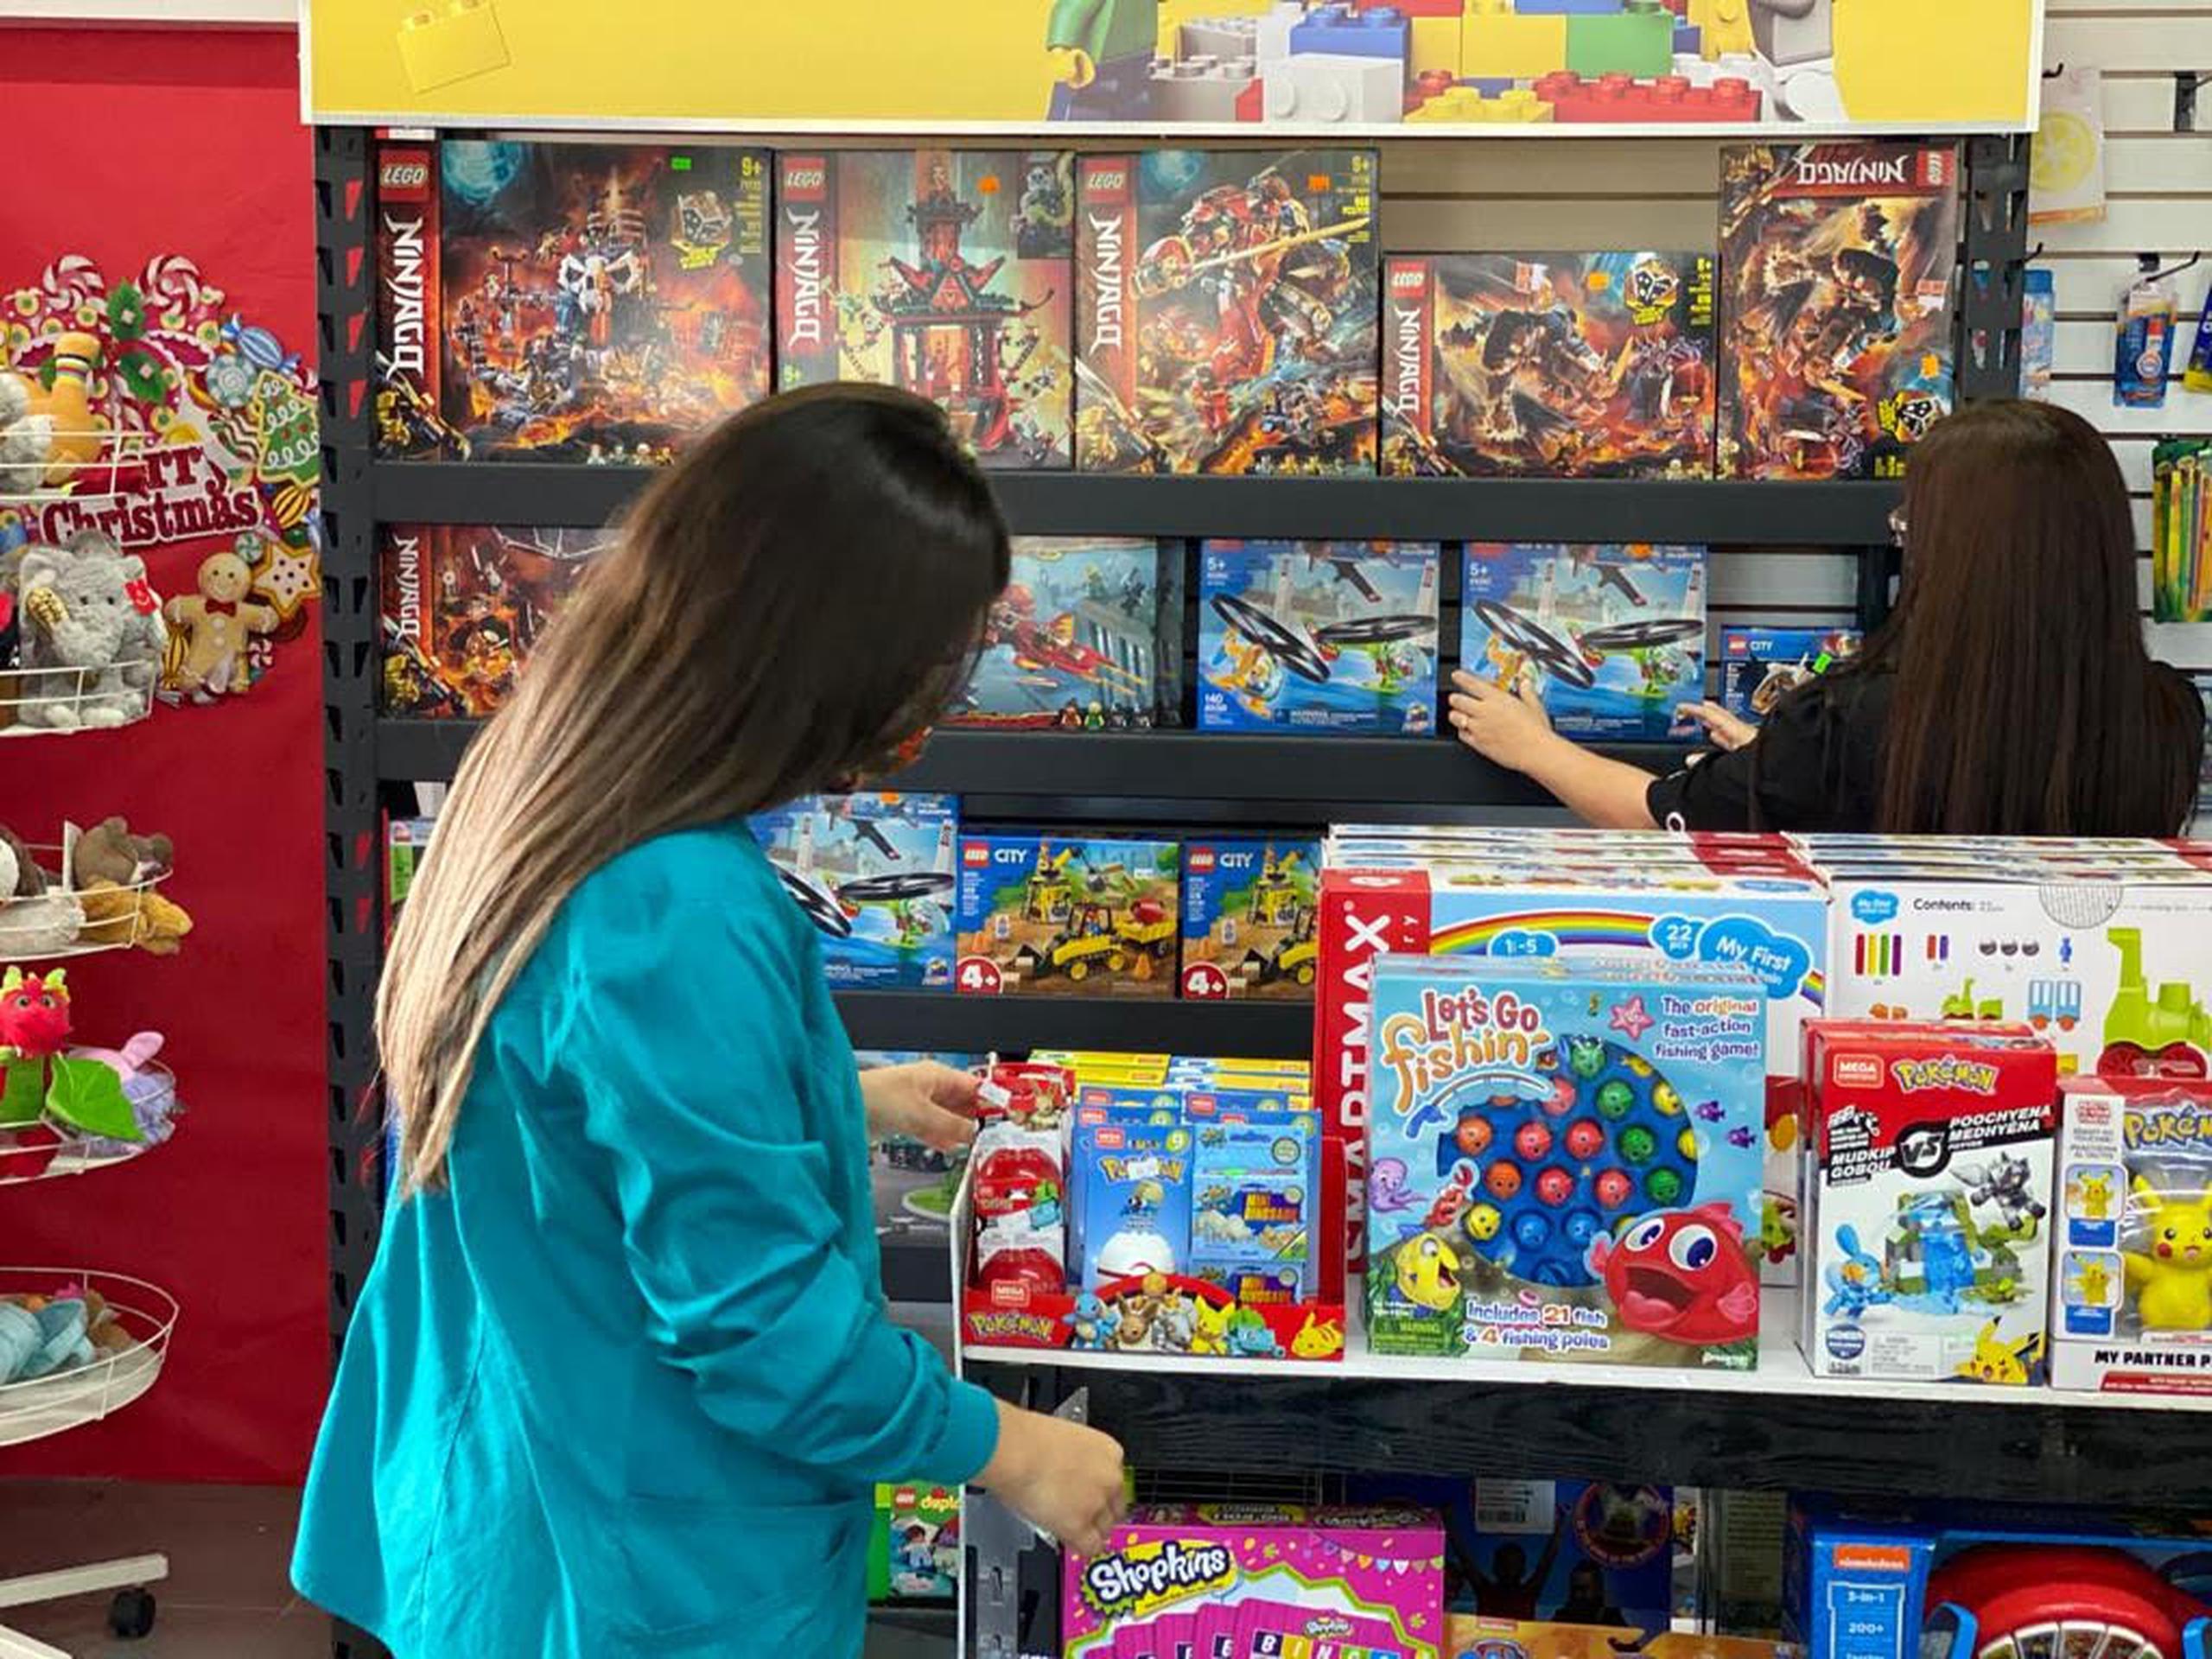 La tienda trabaja desde marcas reconocidas como Barbie y Lego hasta juguetes educativos, rompecabezas, carritos, bloques, muñecas y libros infantiles de autores puertorriqueños.